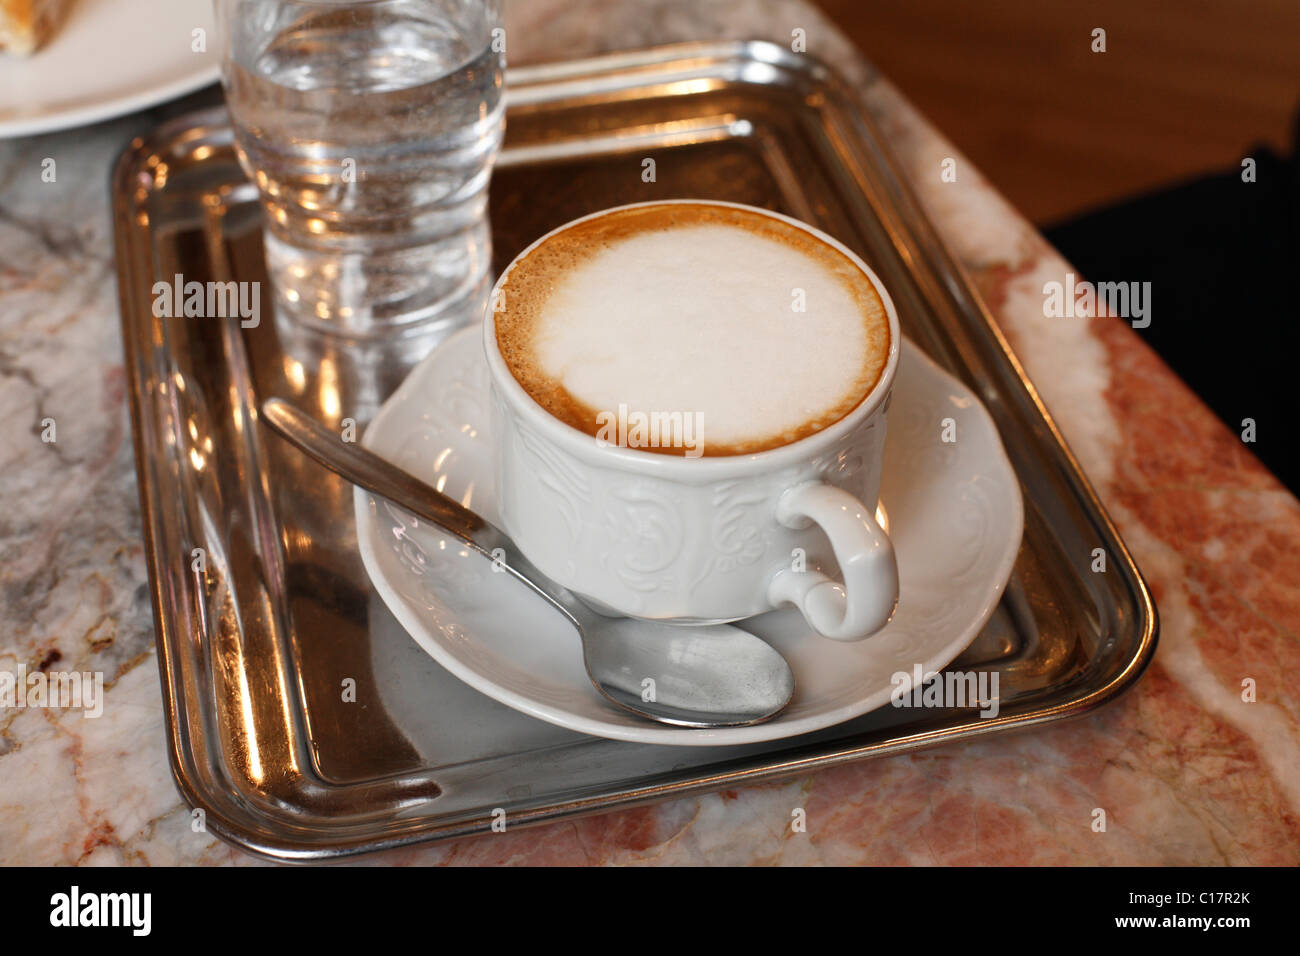 Viennese Melange coffee with frothy milk, Vienna, Austria, Europe Stock Photo